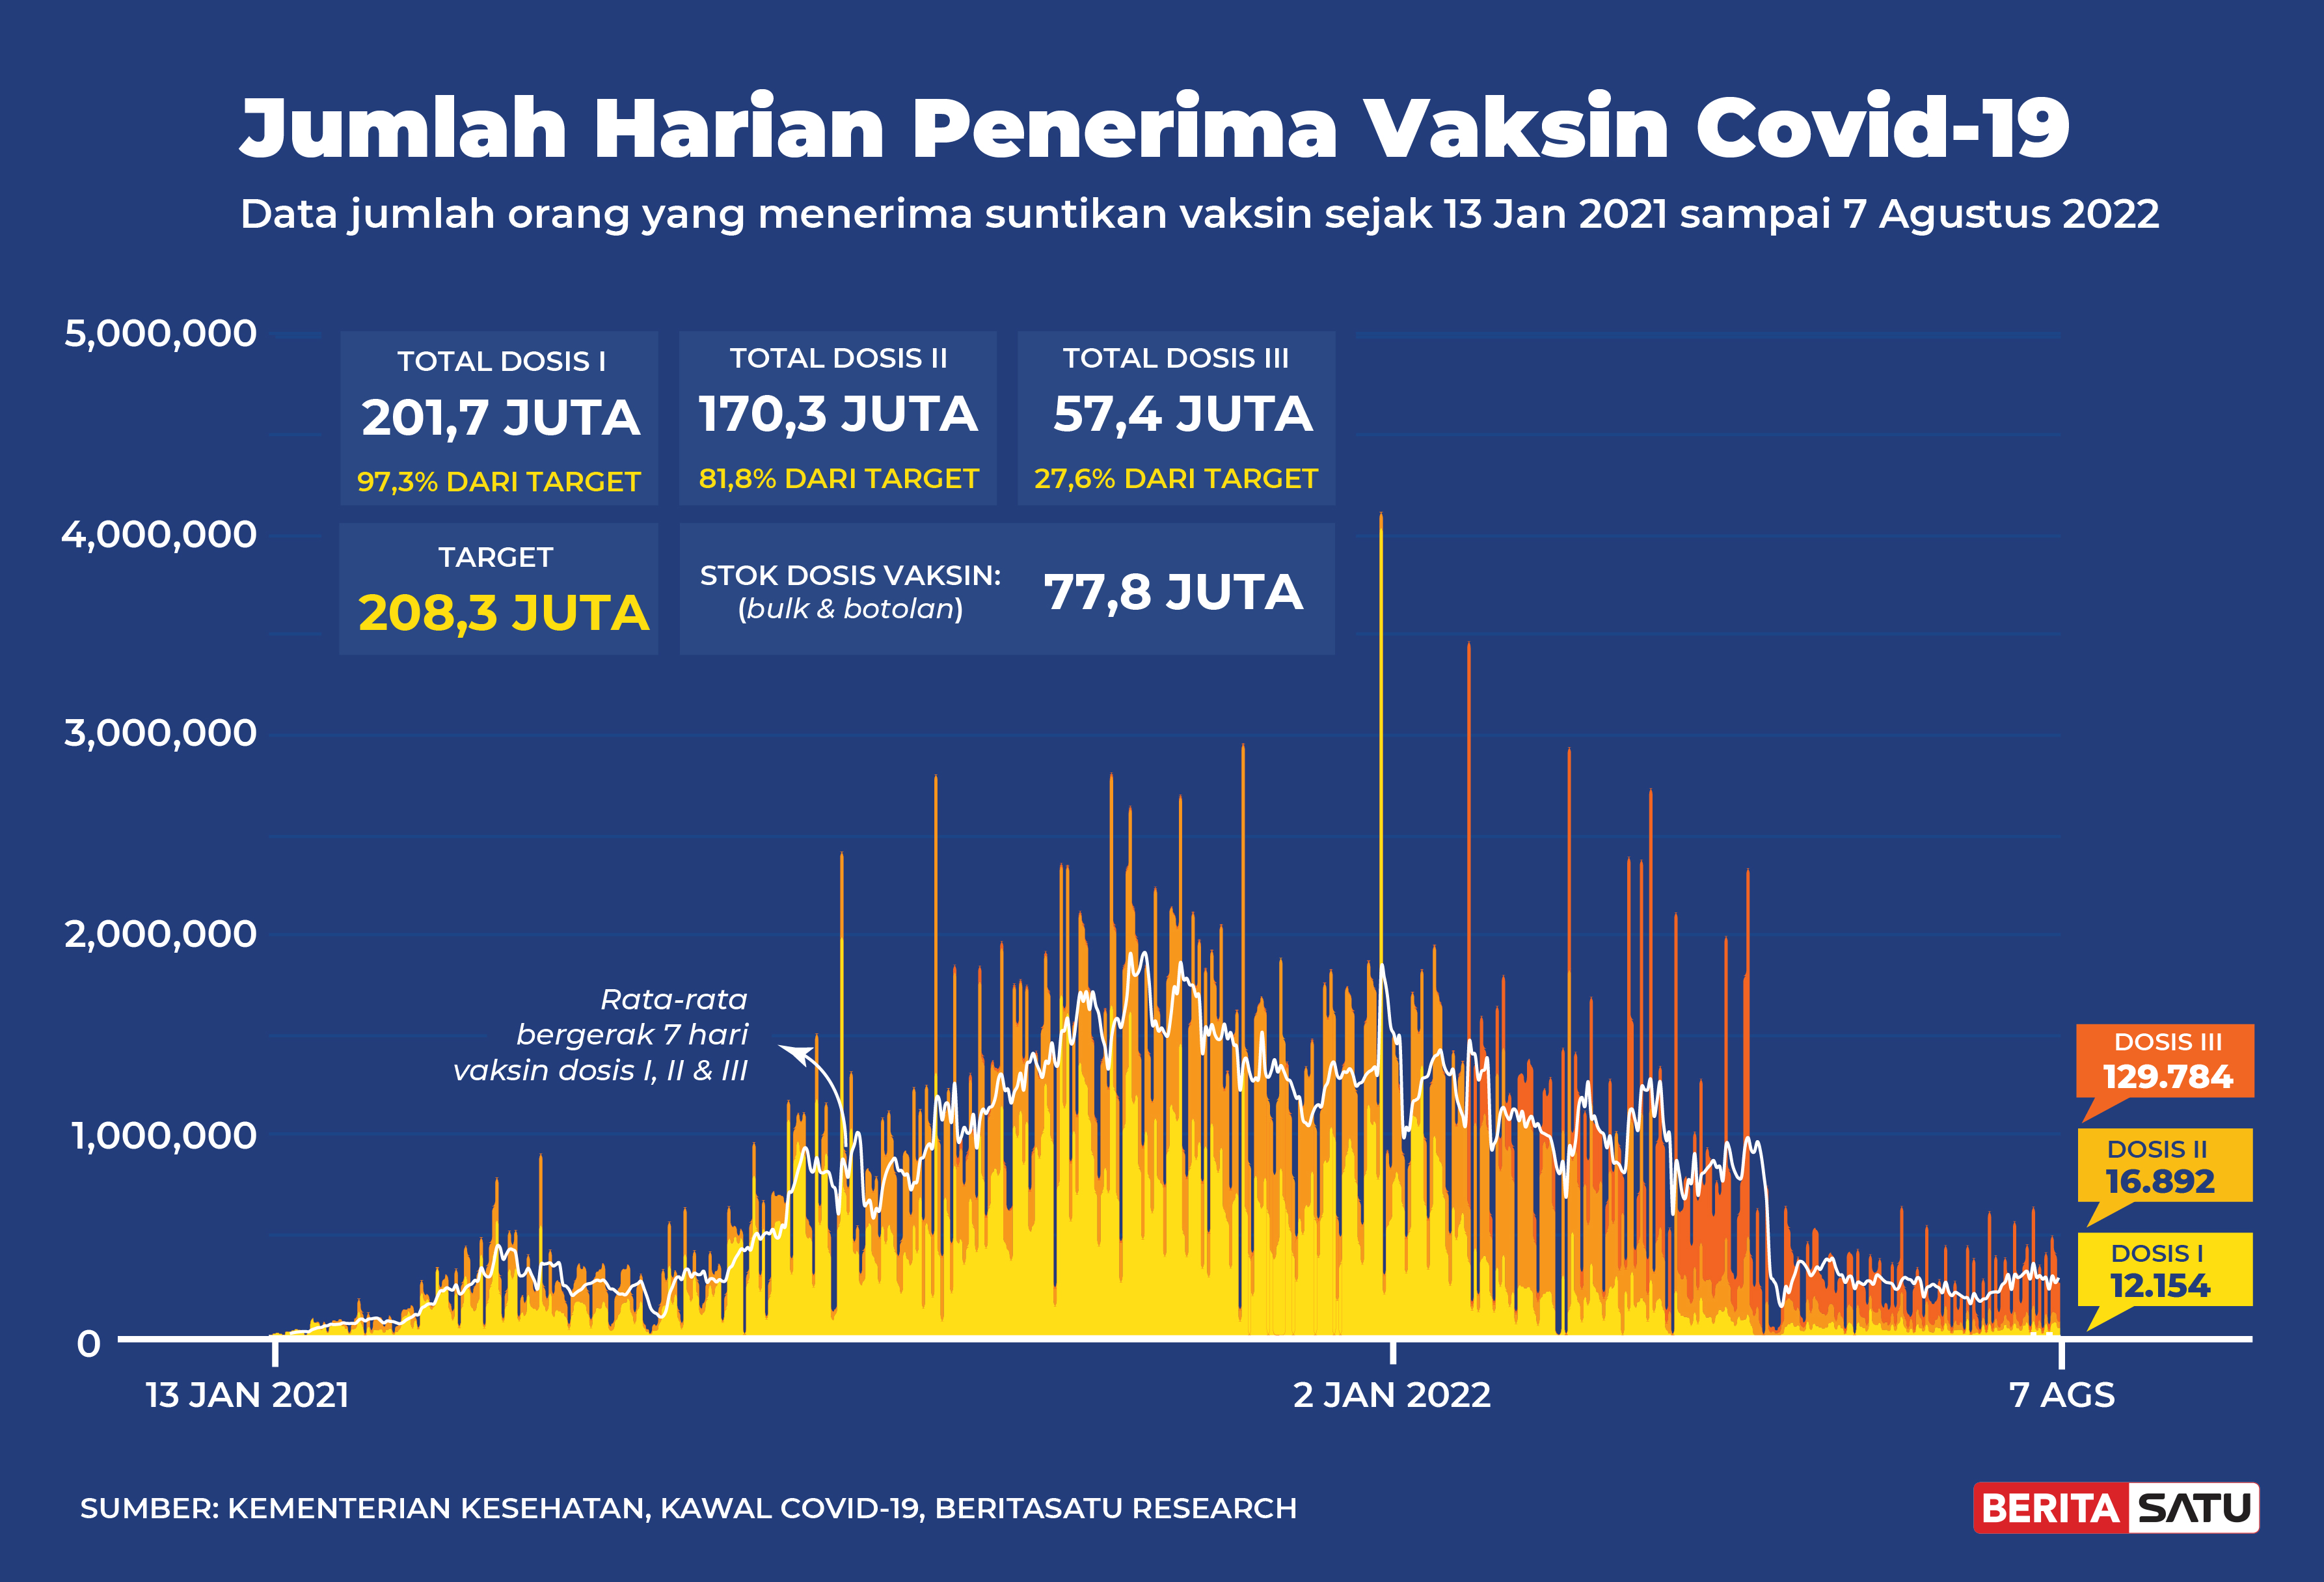 Penerima Vaksin Covid-19 di Indonesia sampai 7 Agustus 2022